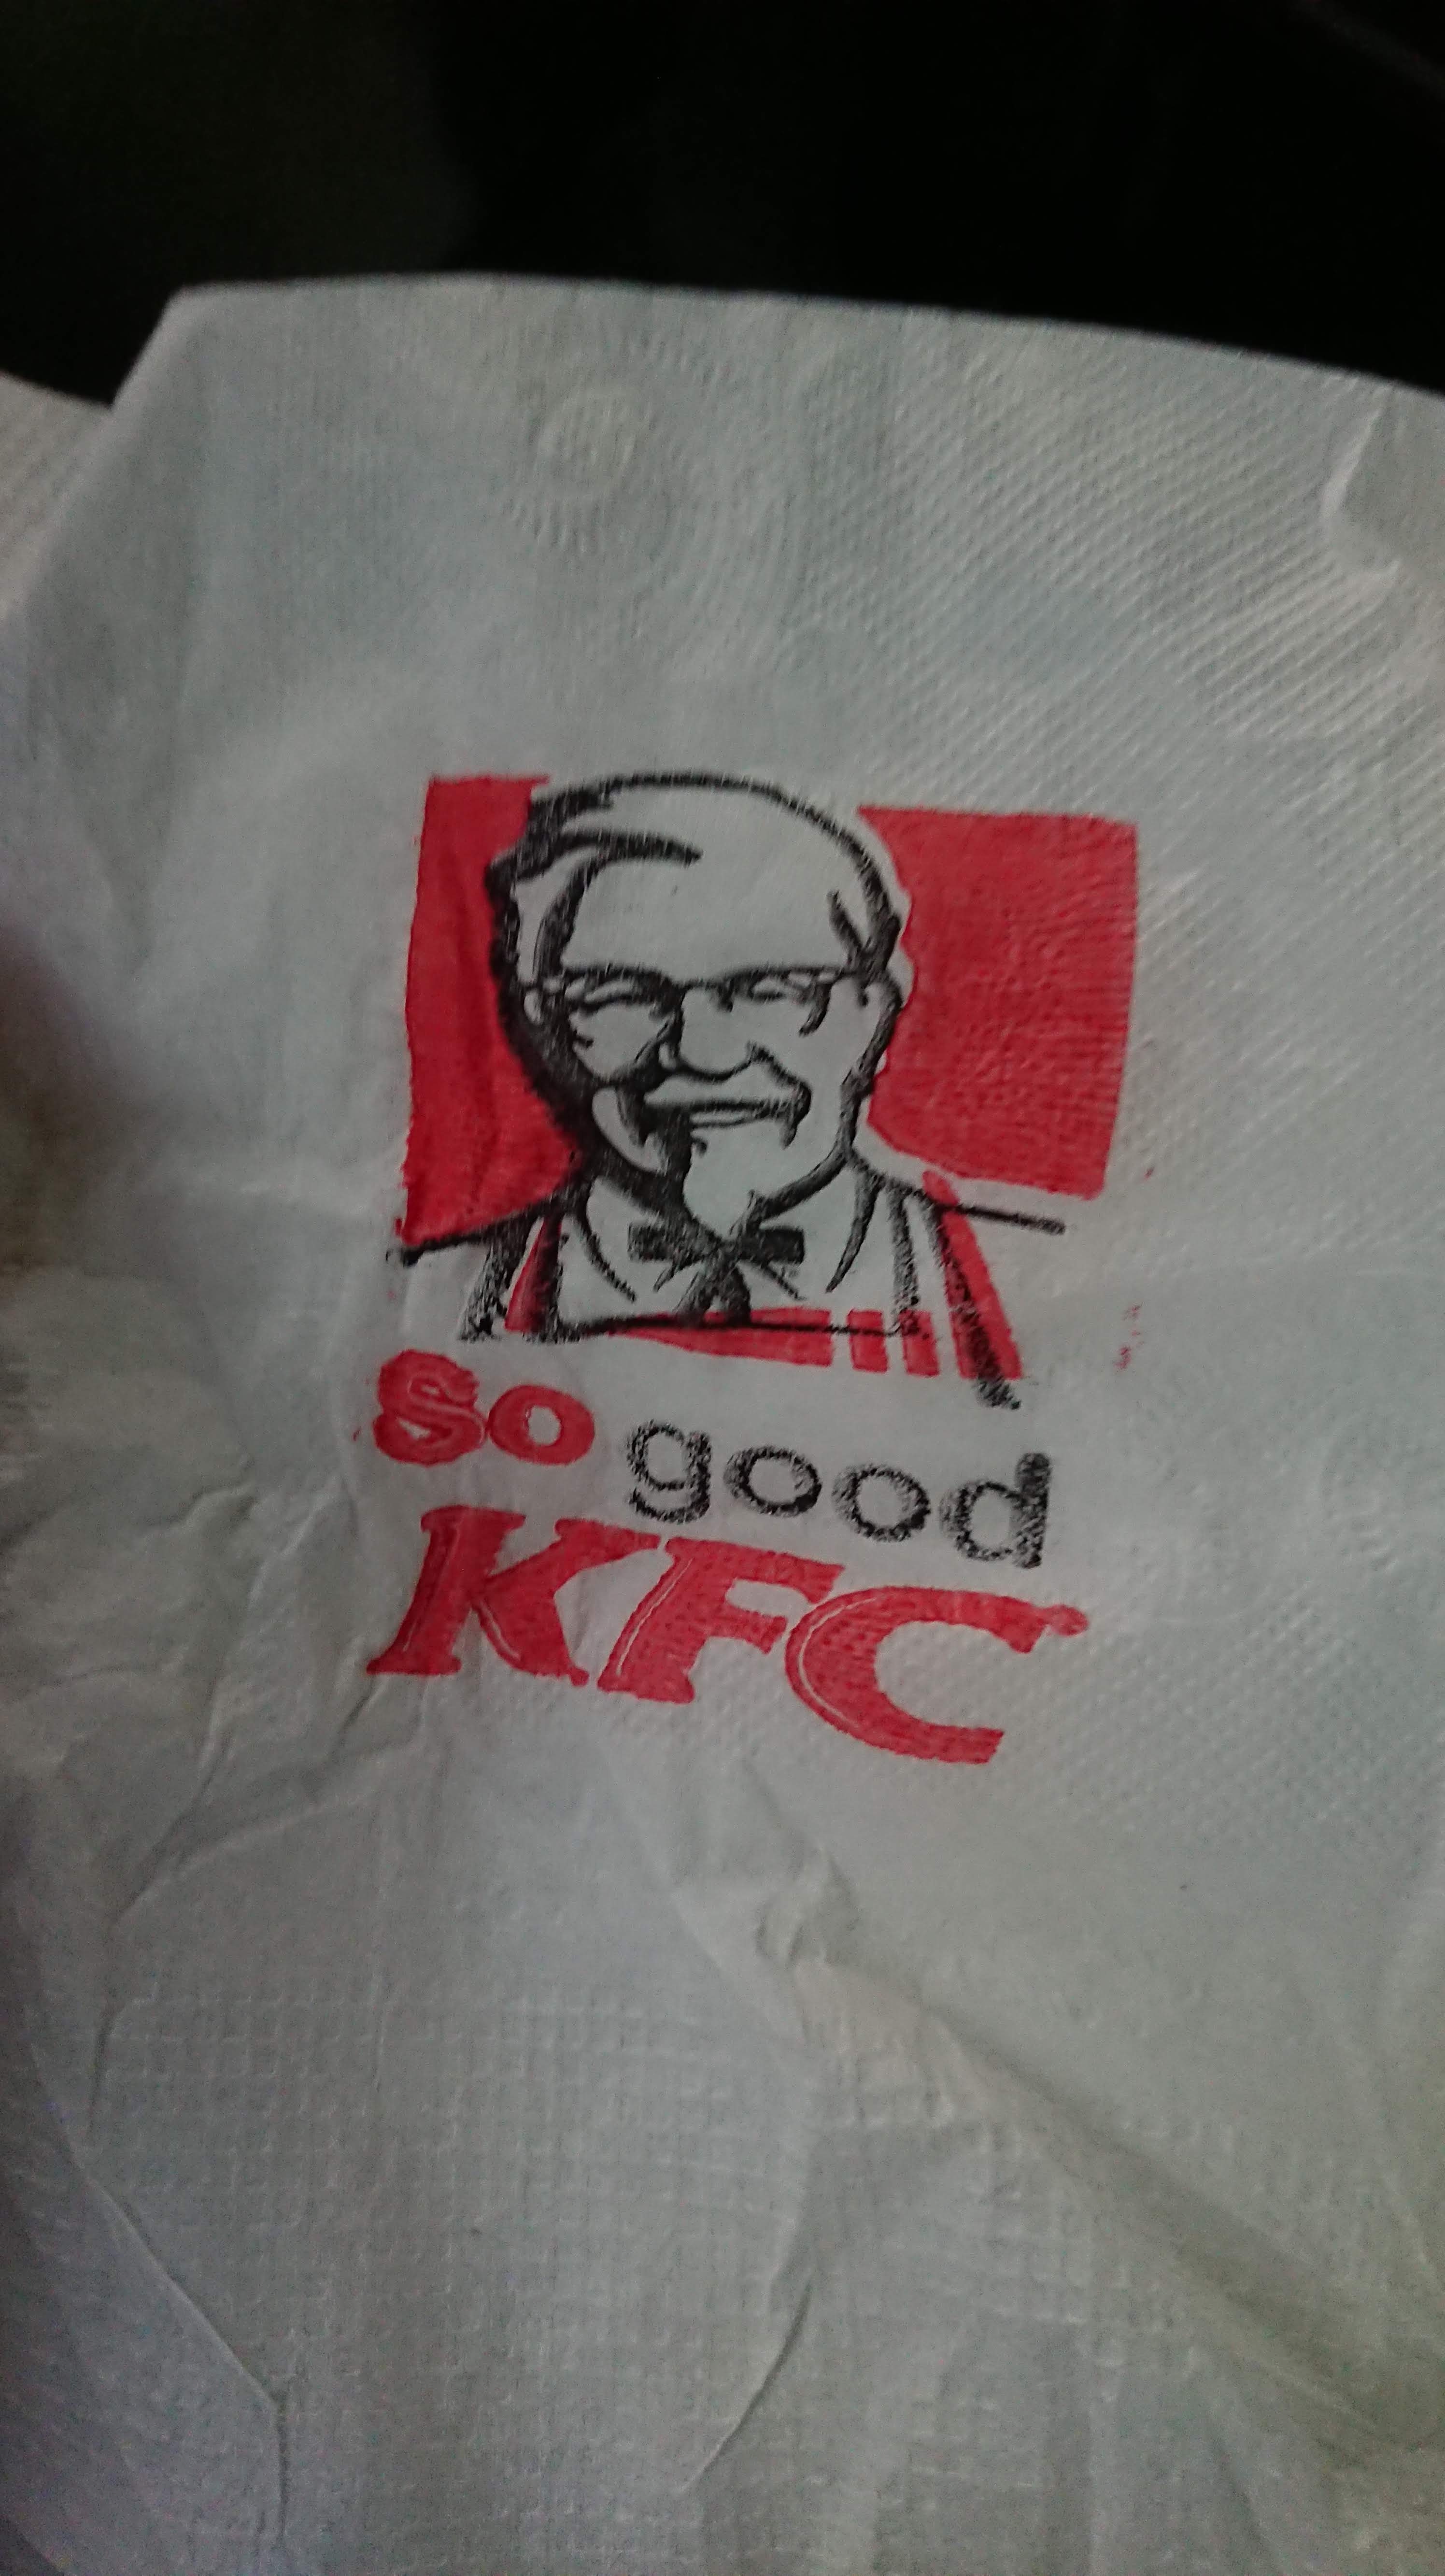 KFC, so GOOD!